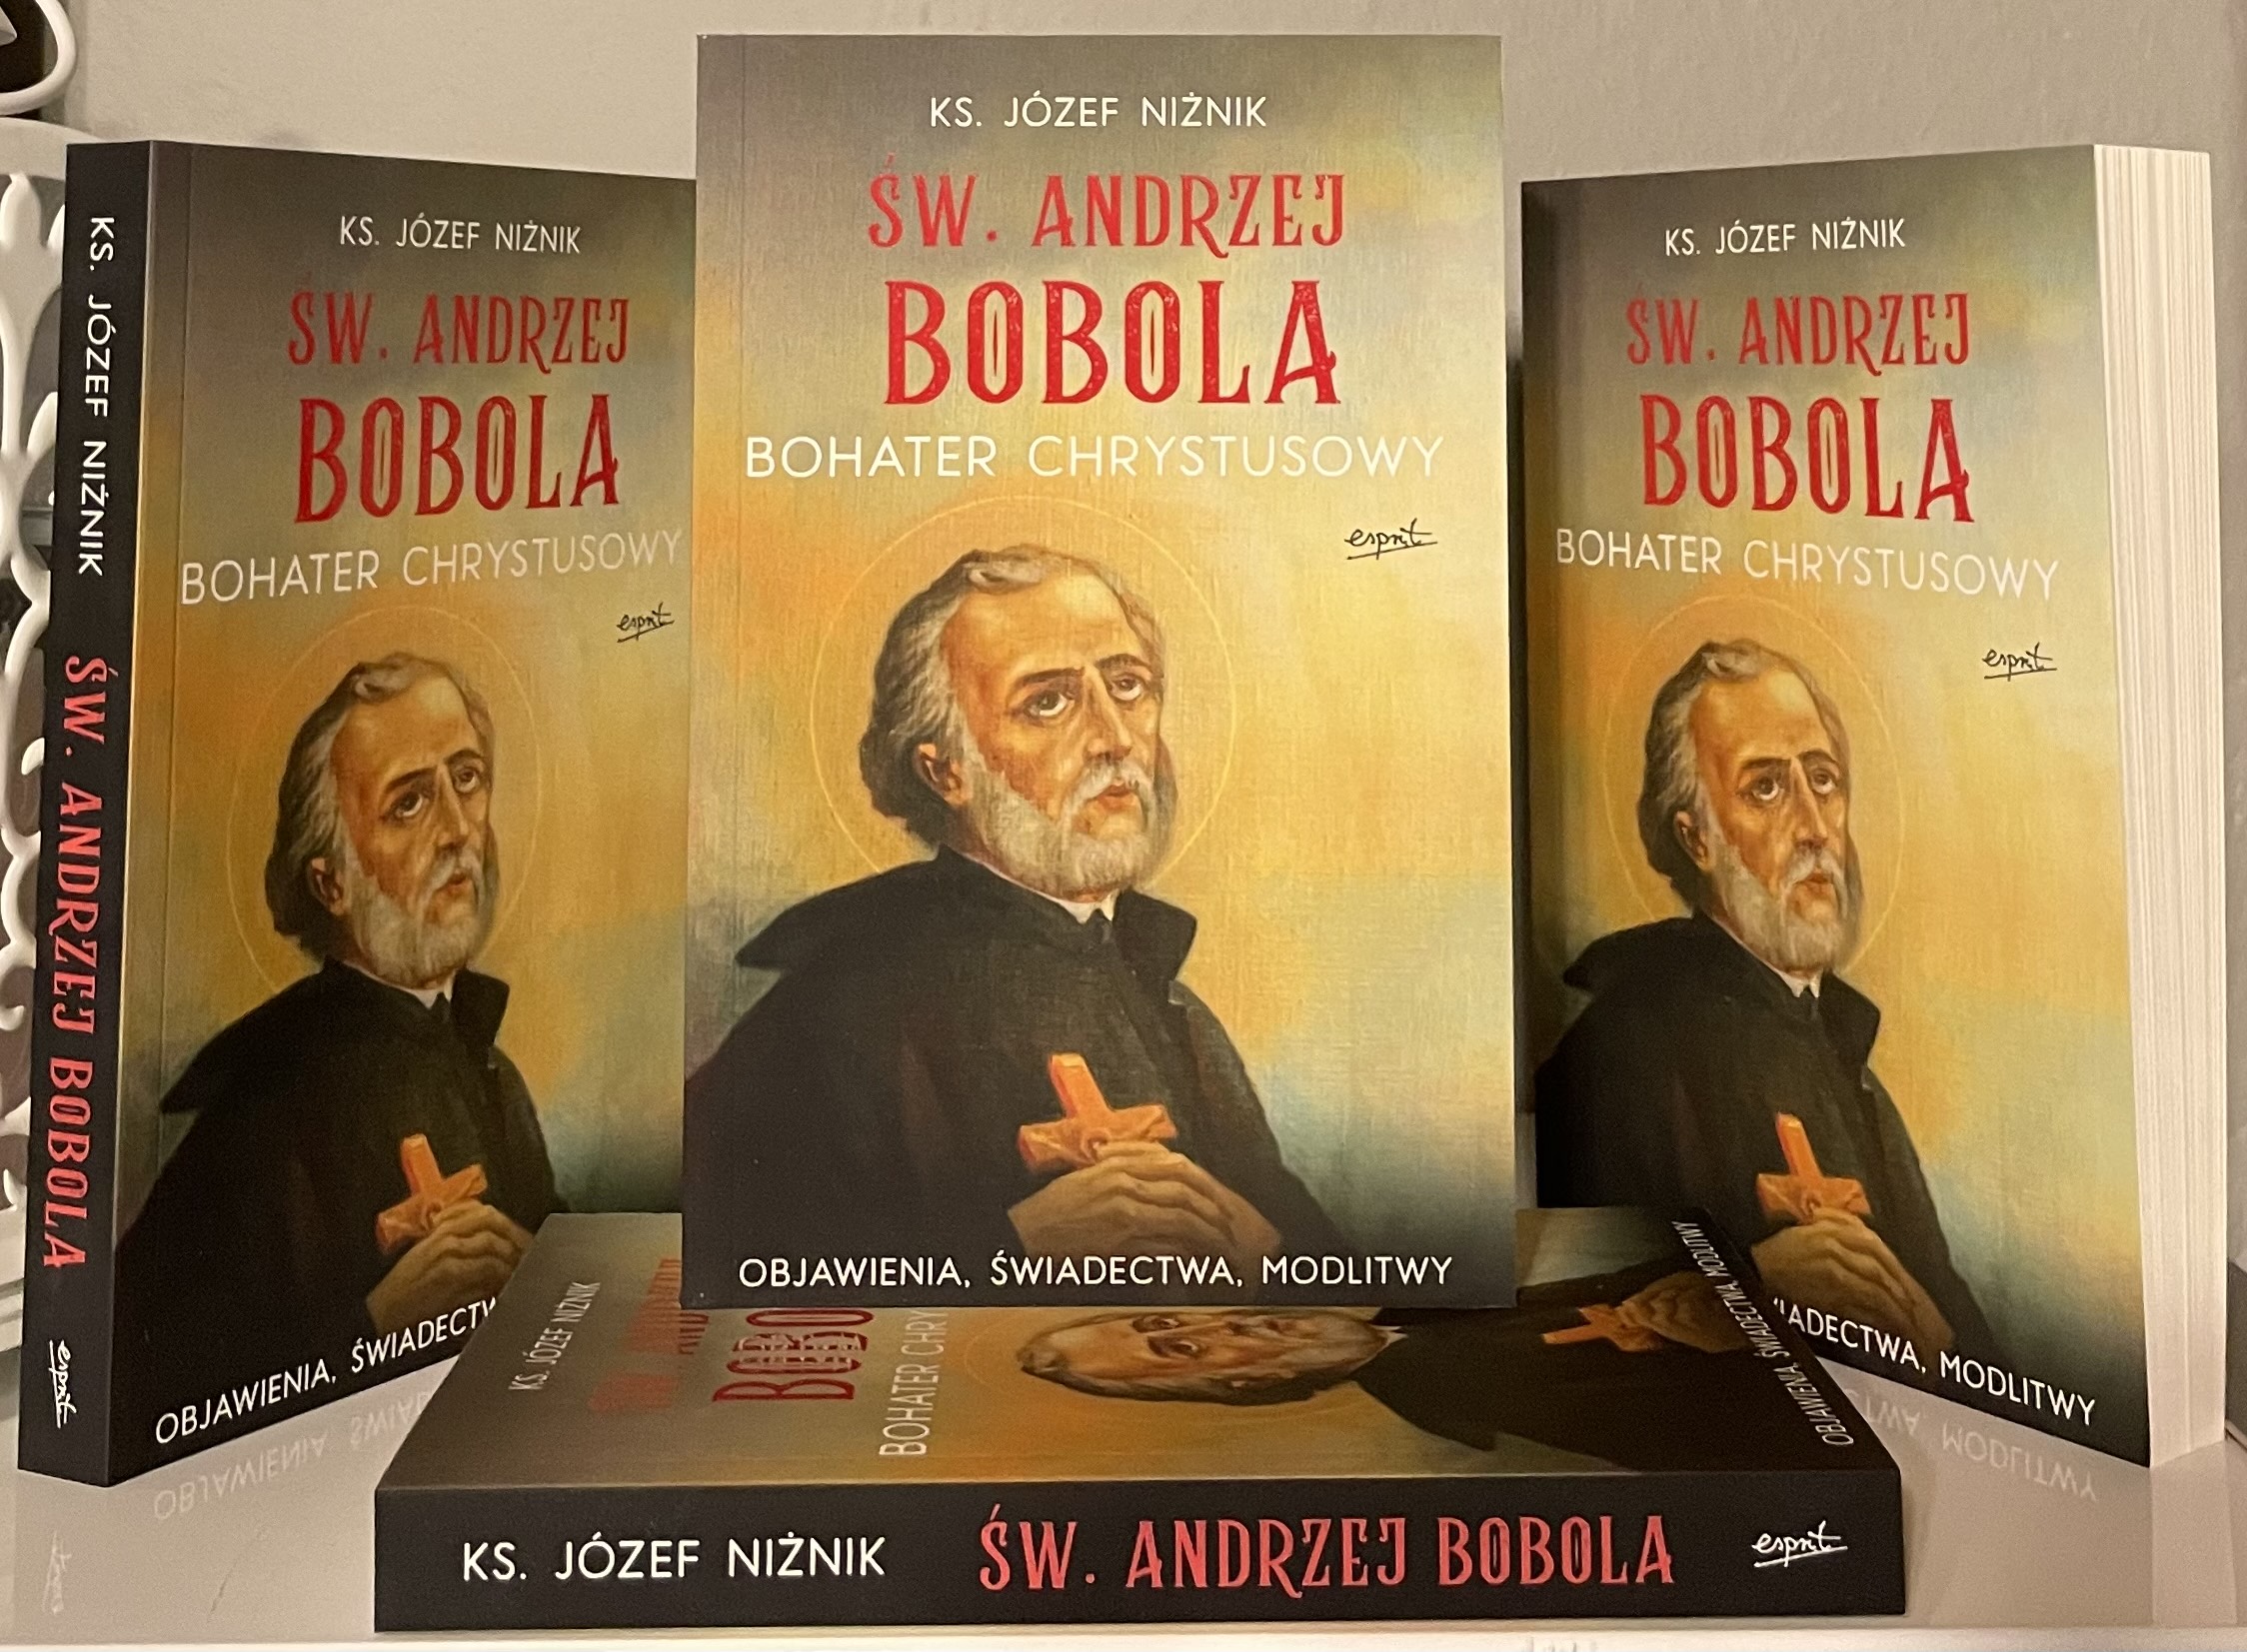 Promocja książki "Św. Andrzej Bobola bohater Chrystusowy"